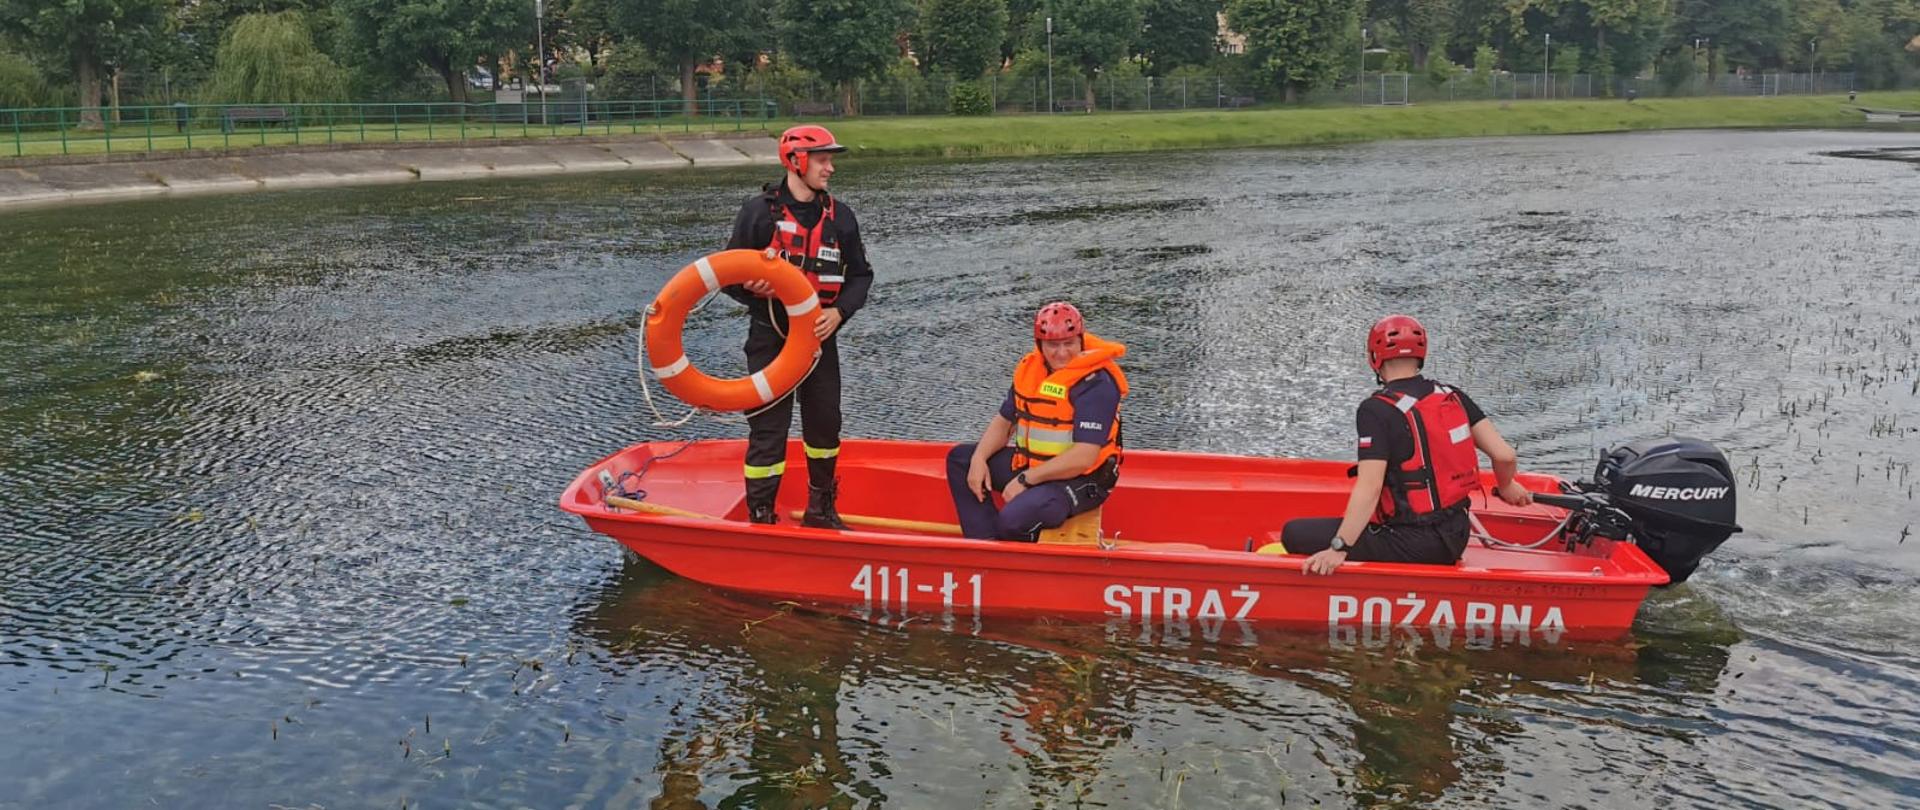 Zdjęcie przedstawia zbiornik wodny, na którym łodzią pływają strażacy wraz z policjantem zabezpieczeni w kamizelki asekuracyjne oraz kaski. Jeden z nich trzyma w rękach koło ratunkowe w kolorze pomarańczowym.